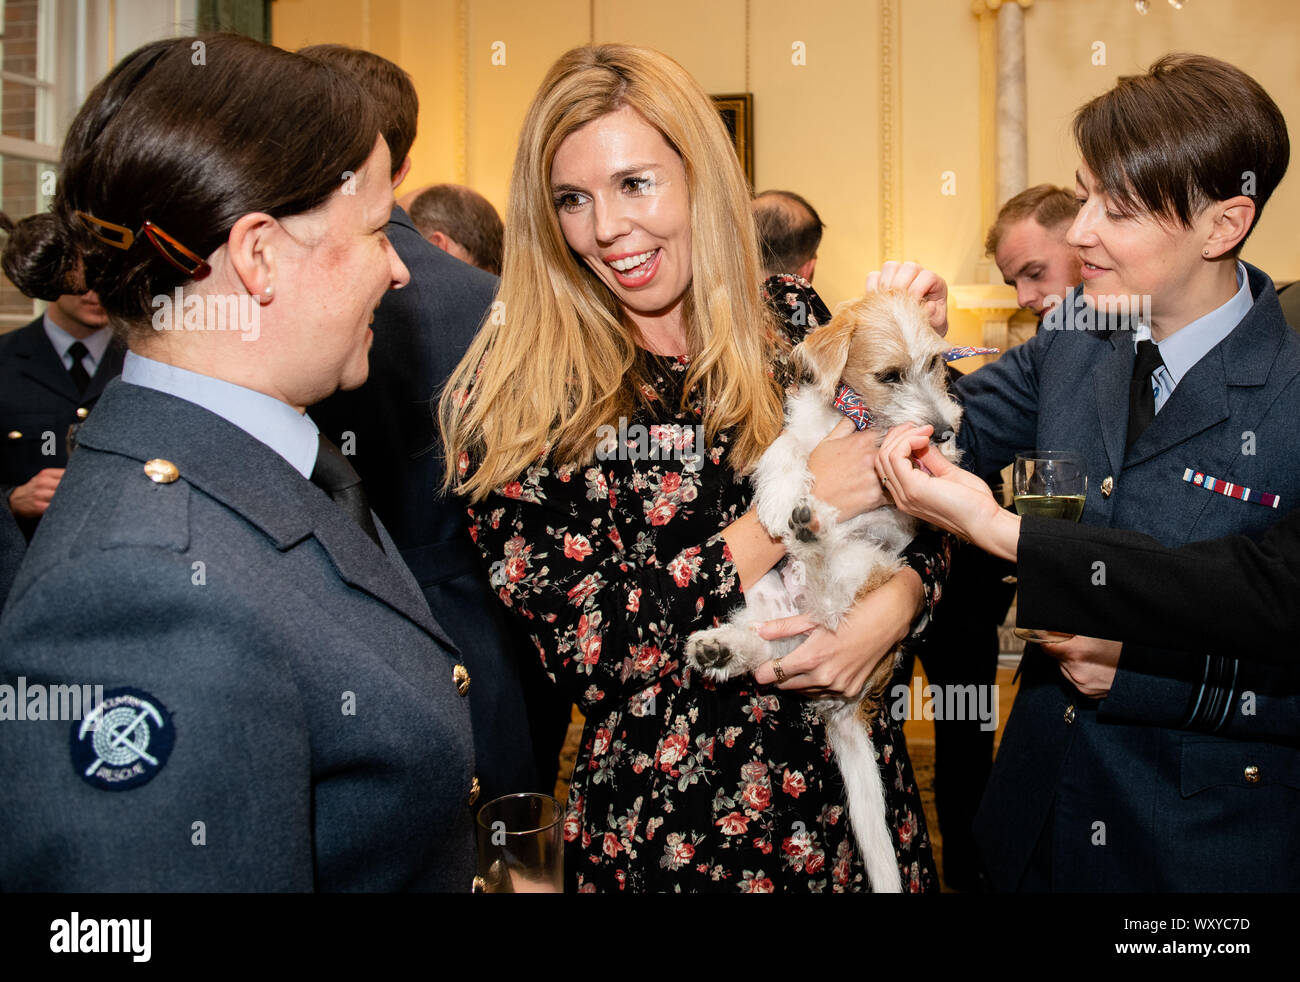 Zu 2230 Embargo Mittwoch, 18. September, der Partner der Premierminister  Boris Johnson, Carrie Symonds (Mitte), führt die Gäste der Jack Russell,  ihrem Hund, um Dilyn als Premierminister Hosts eine militärische Empfang in